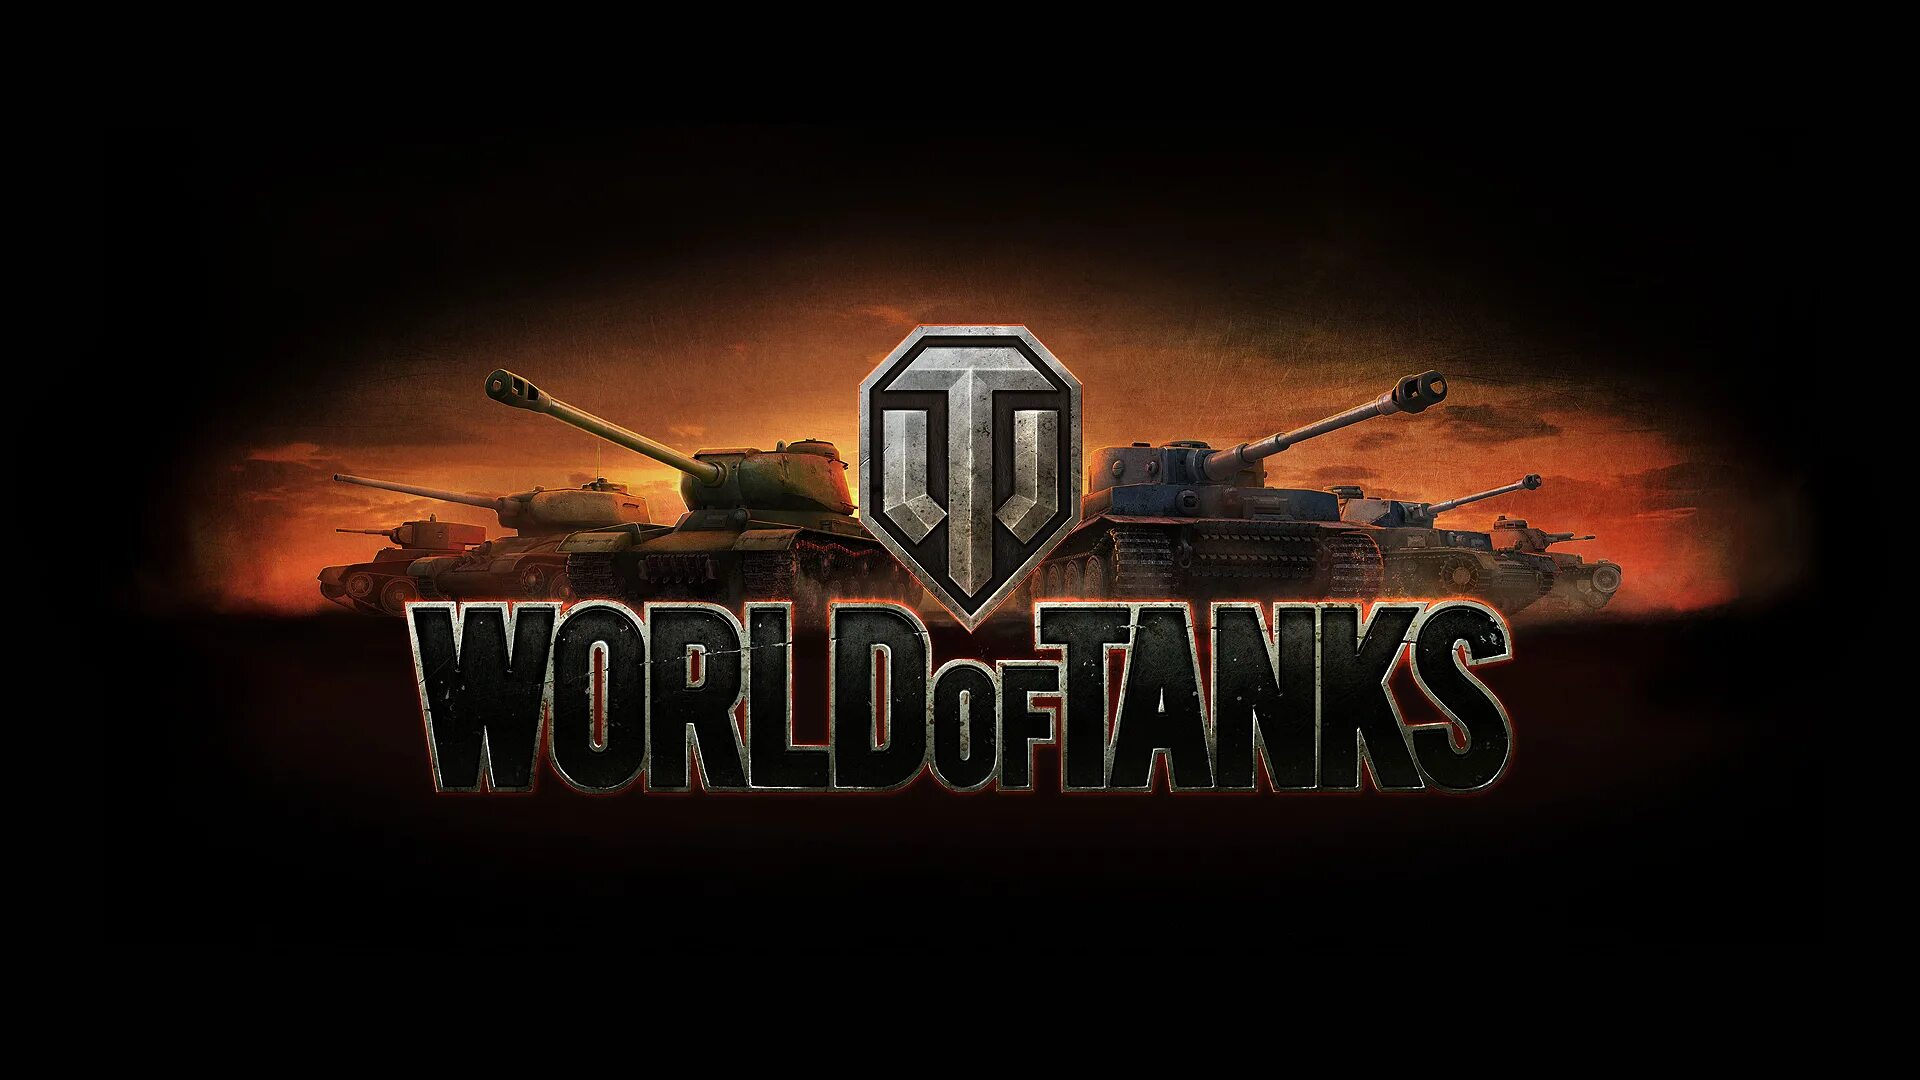 Ворлд оф танкс лучшие. Танк World of Tanks. Эмблема игры World of Tanks. Картинки World of Tanks. Картинки WOT на рабочий стол.